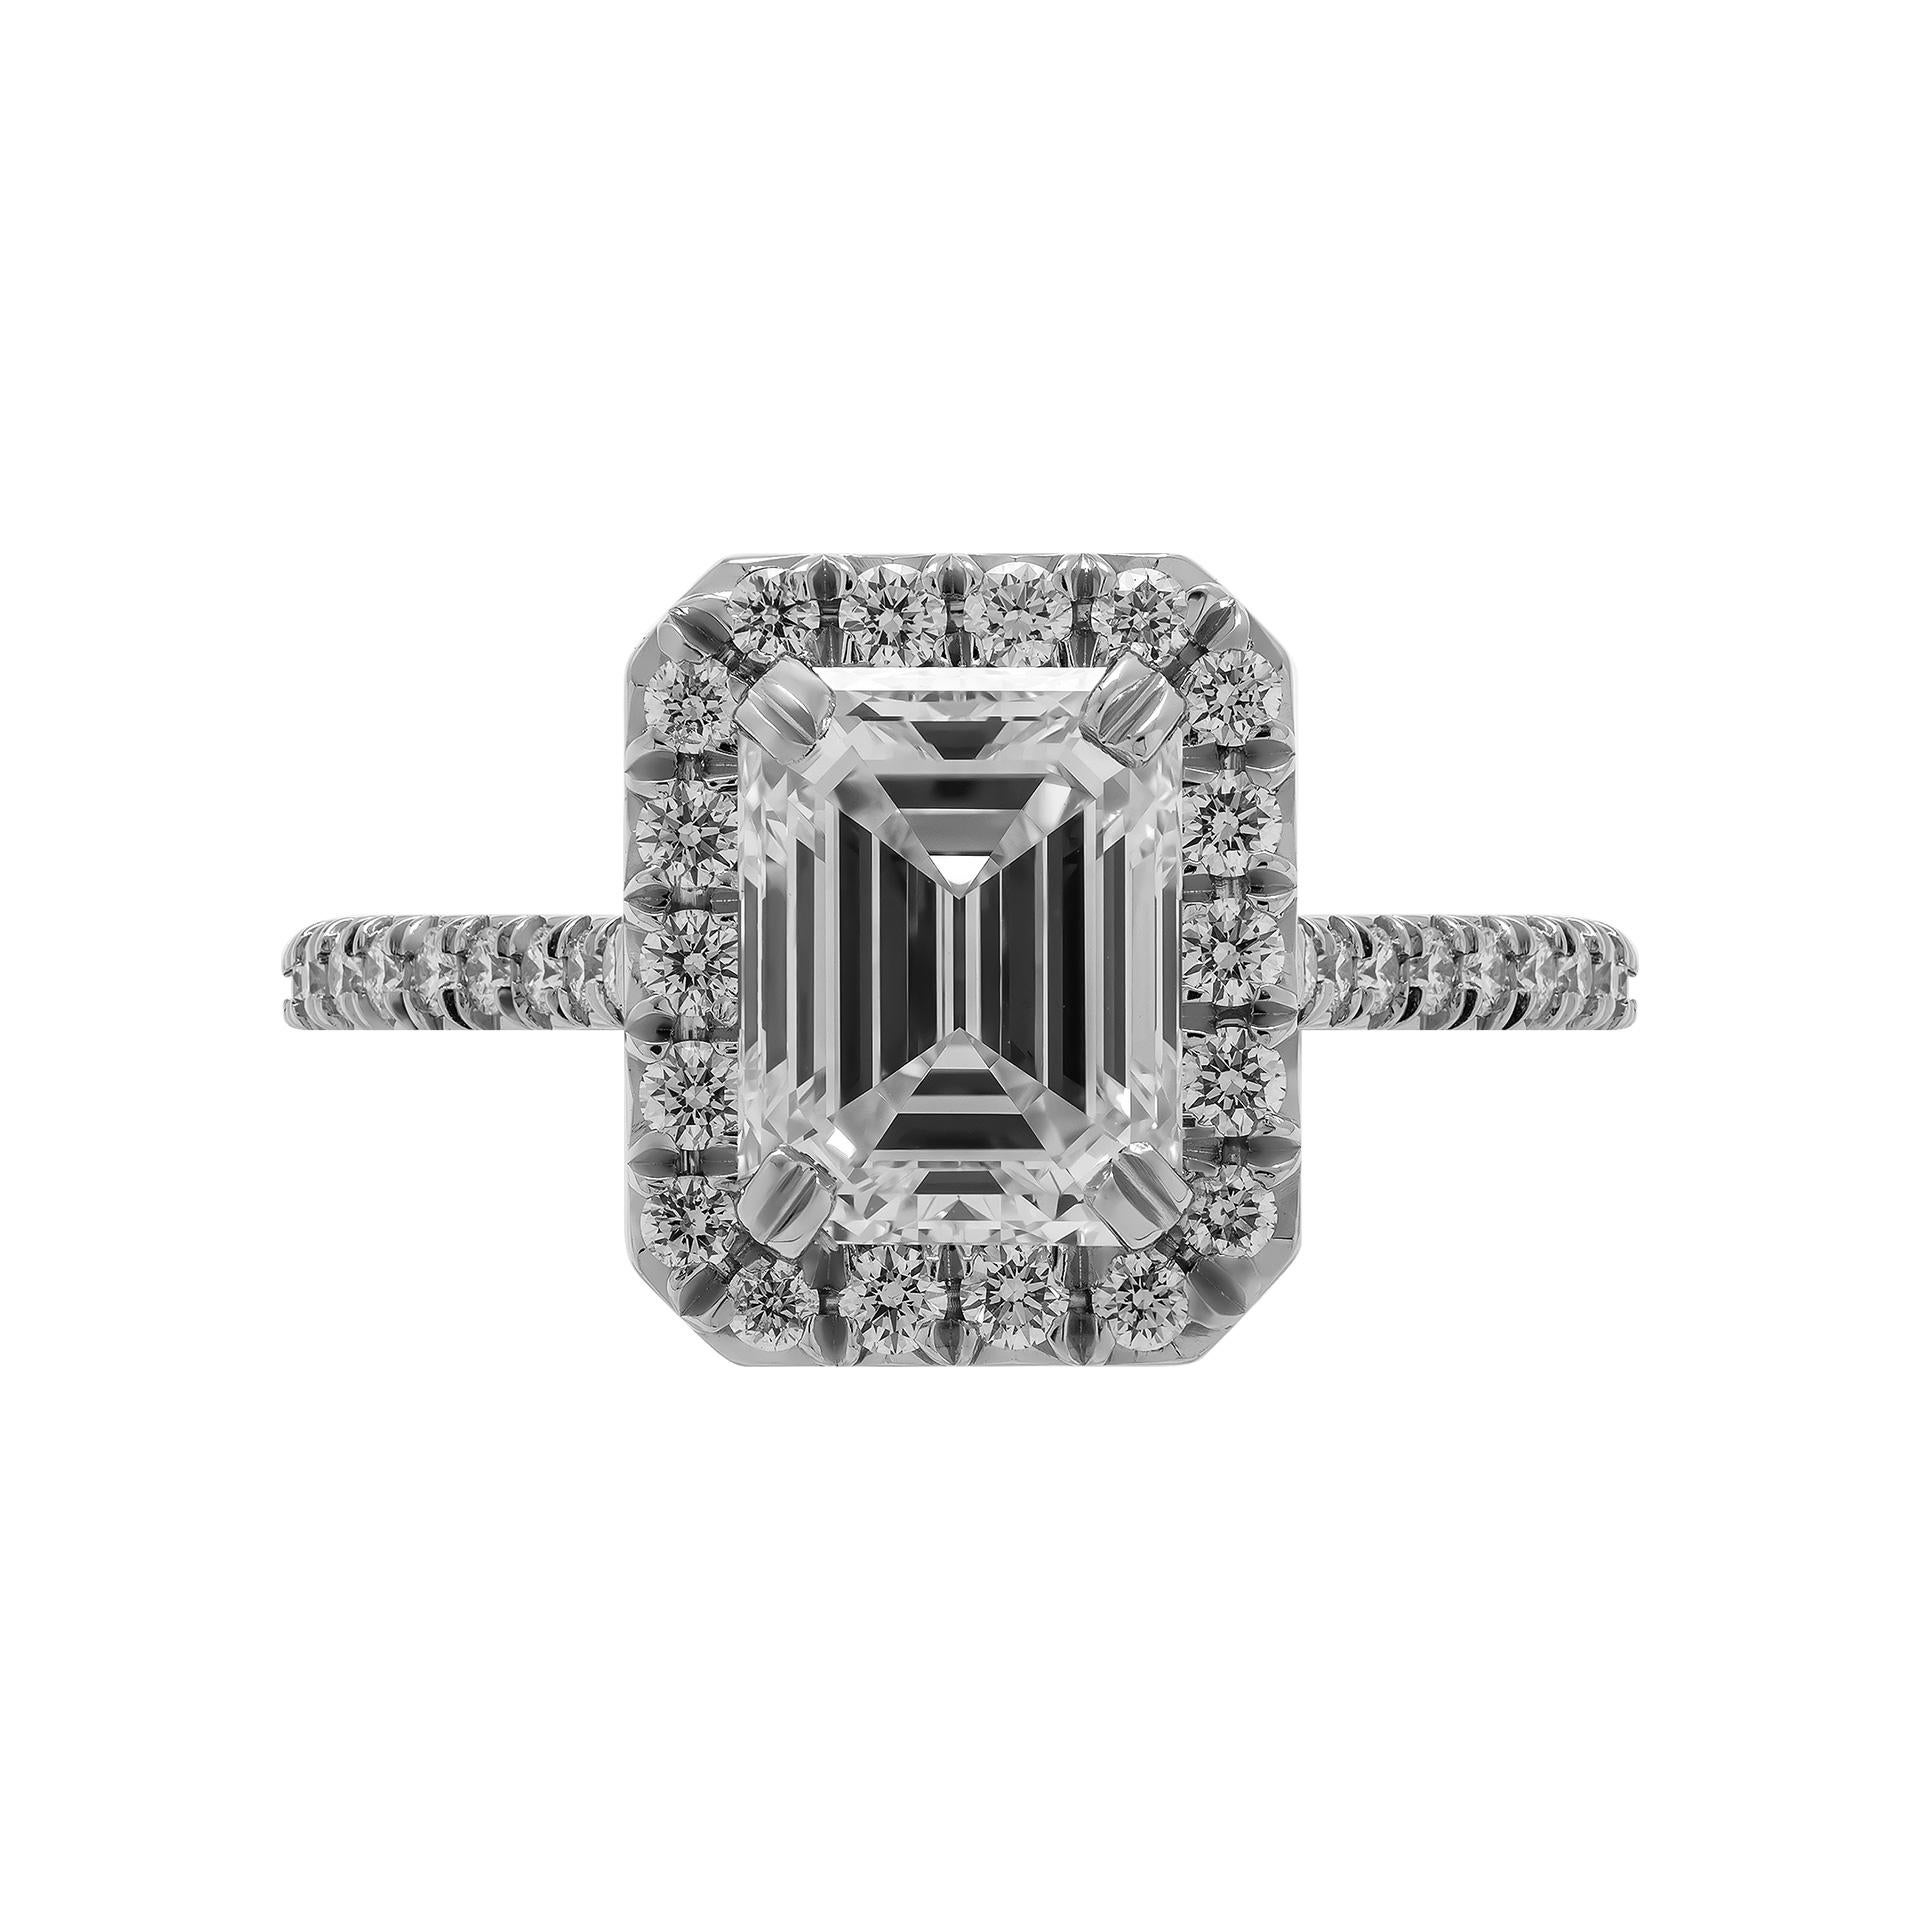 Bague de fiançailles en diamant taille émeraude certifié GIA de 1,80 carat Bague de fiançailles en diamant taille émeraude classique et intemporelle - Classique et intemporelle avec une tige cathédrale en diamant. Montée en platine, avec un